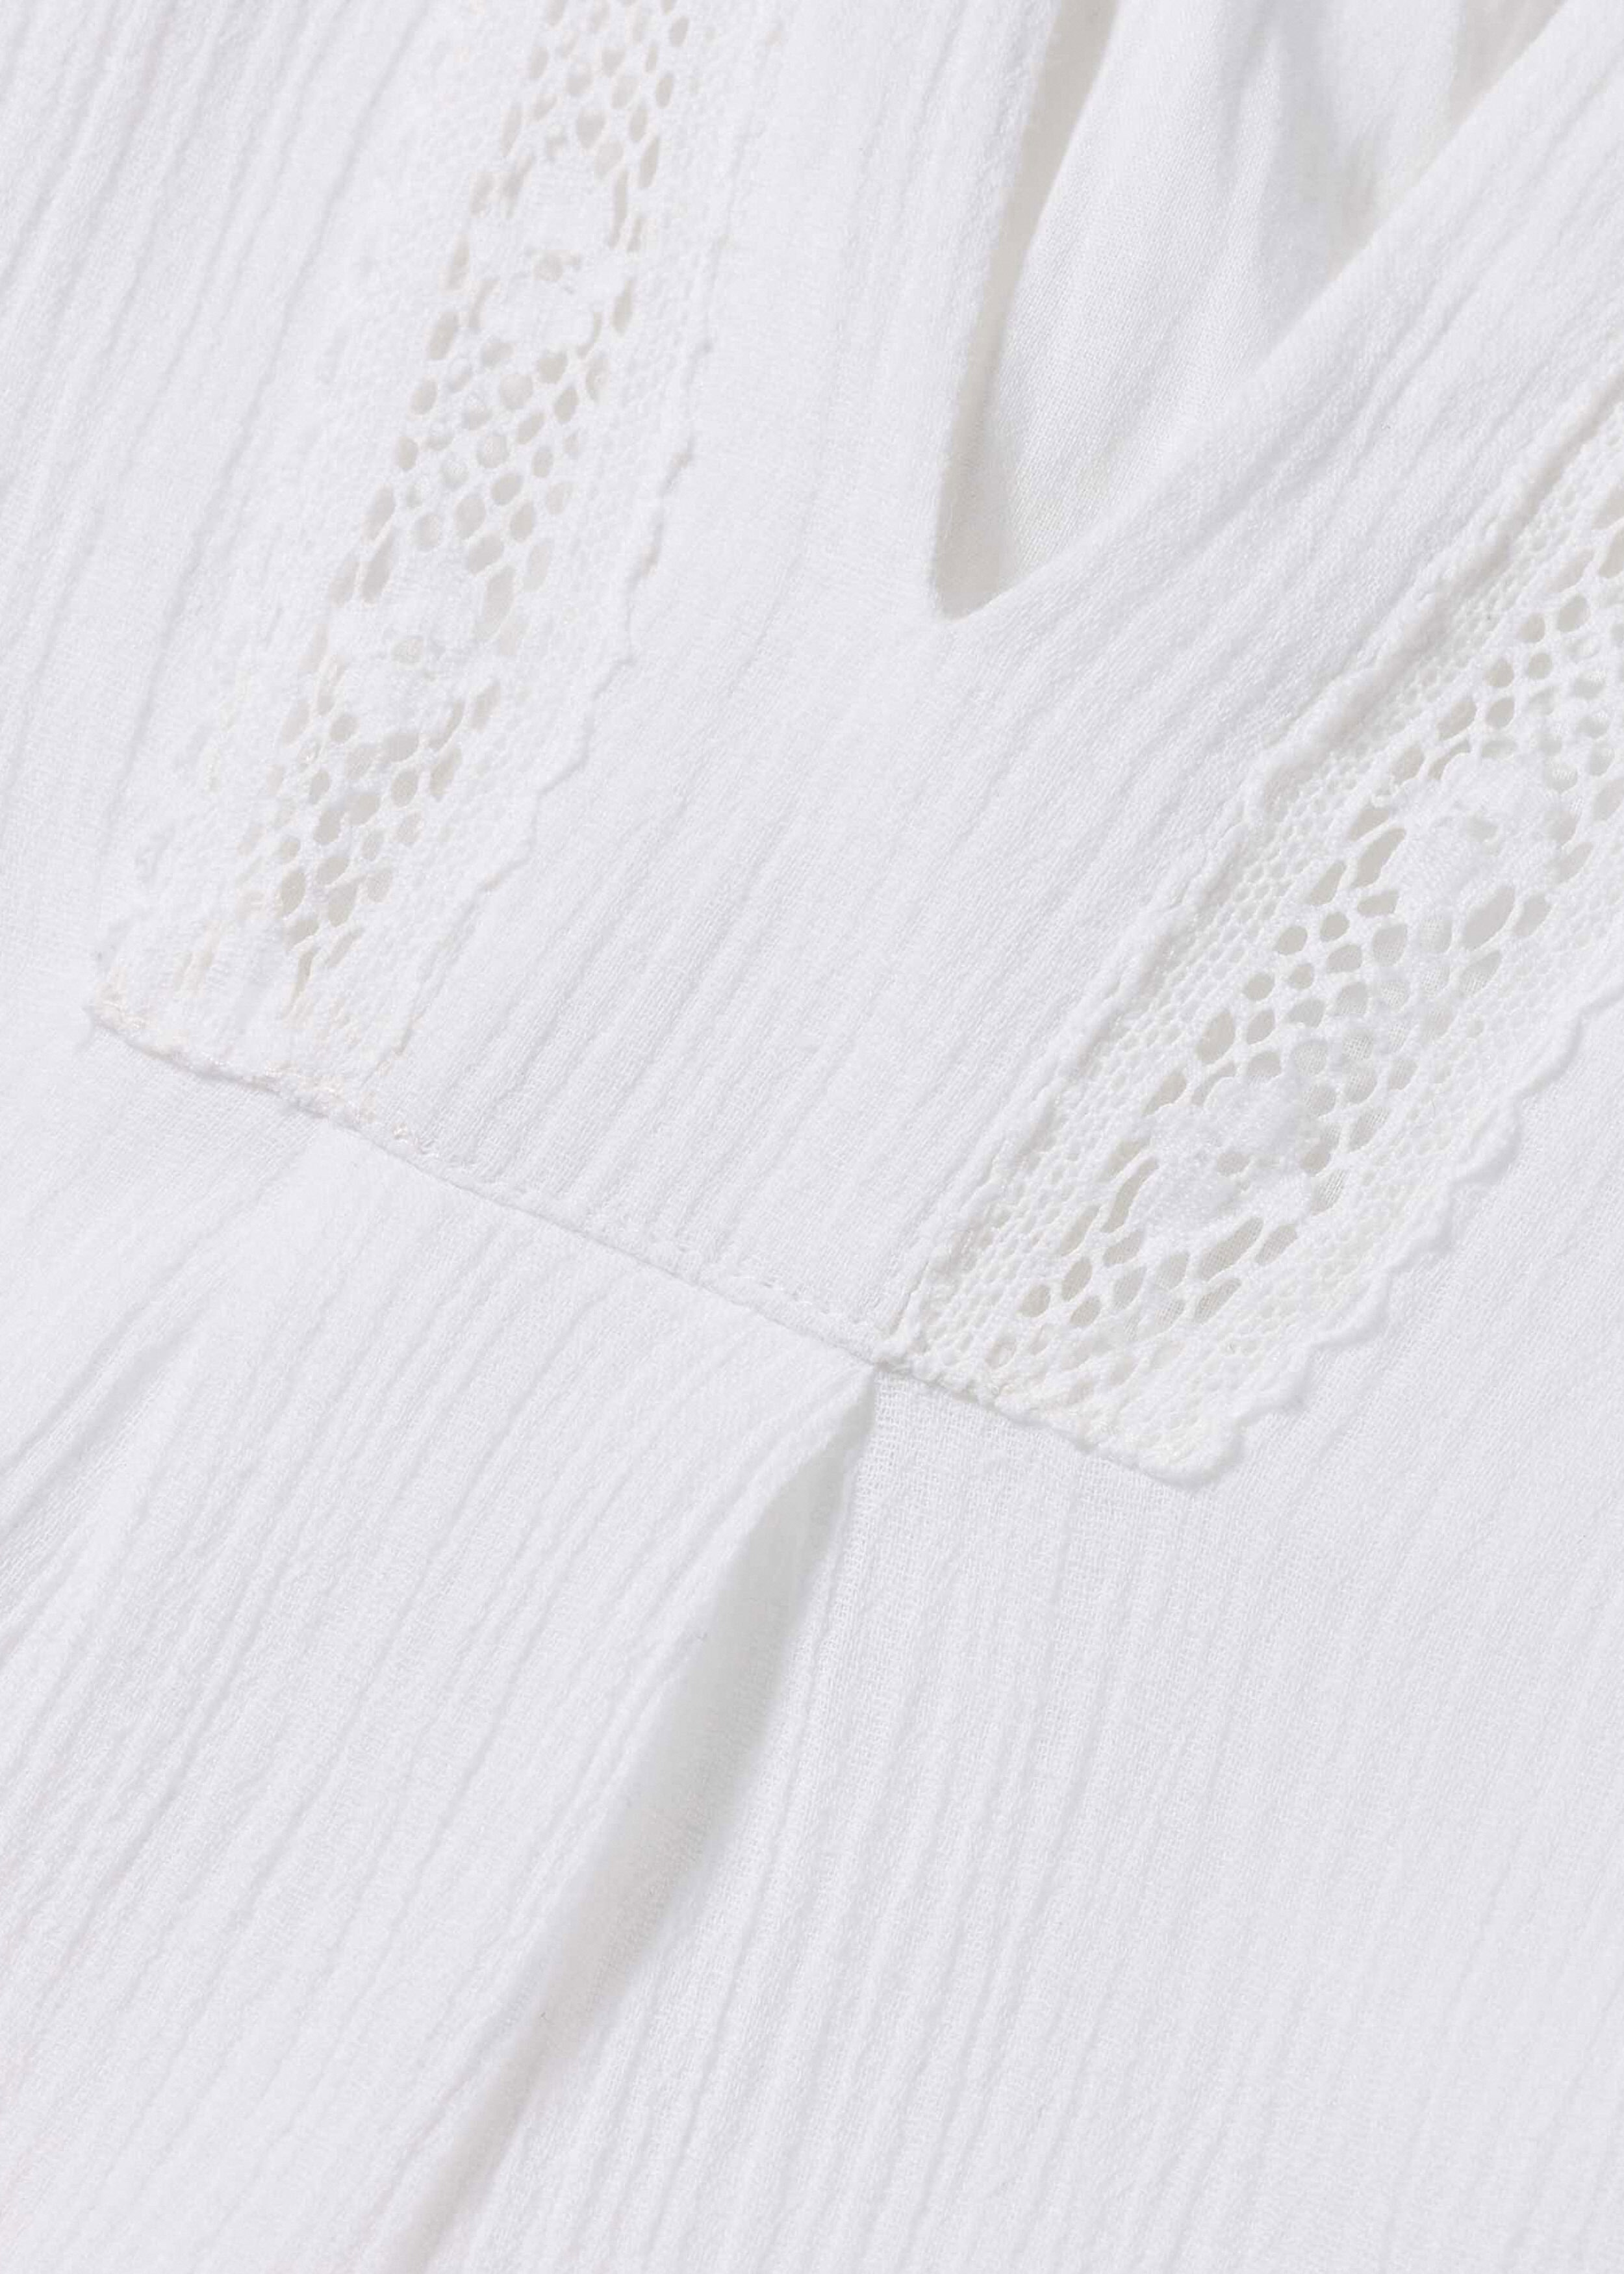 Lace Insert Cotton Dress Soft White